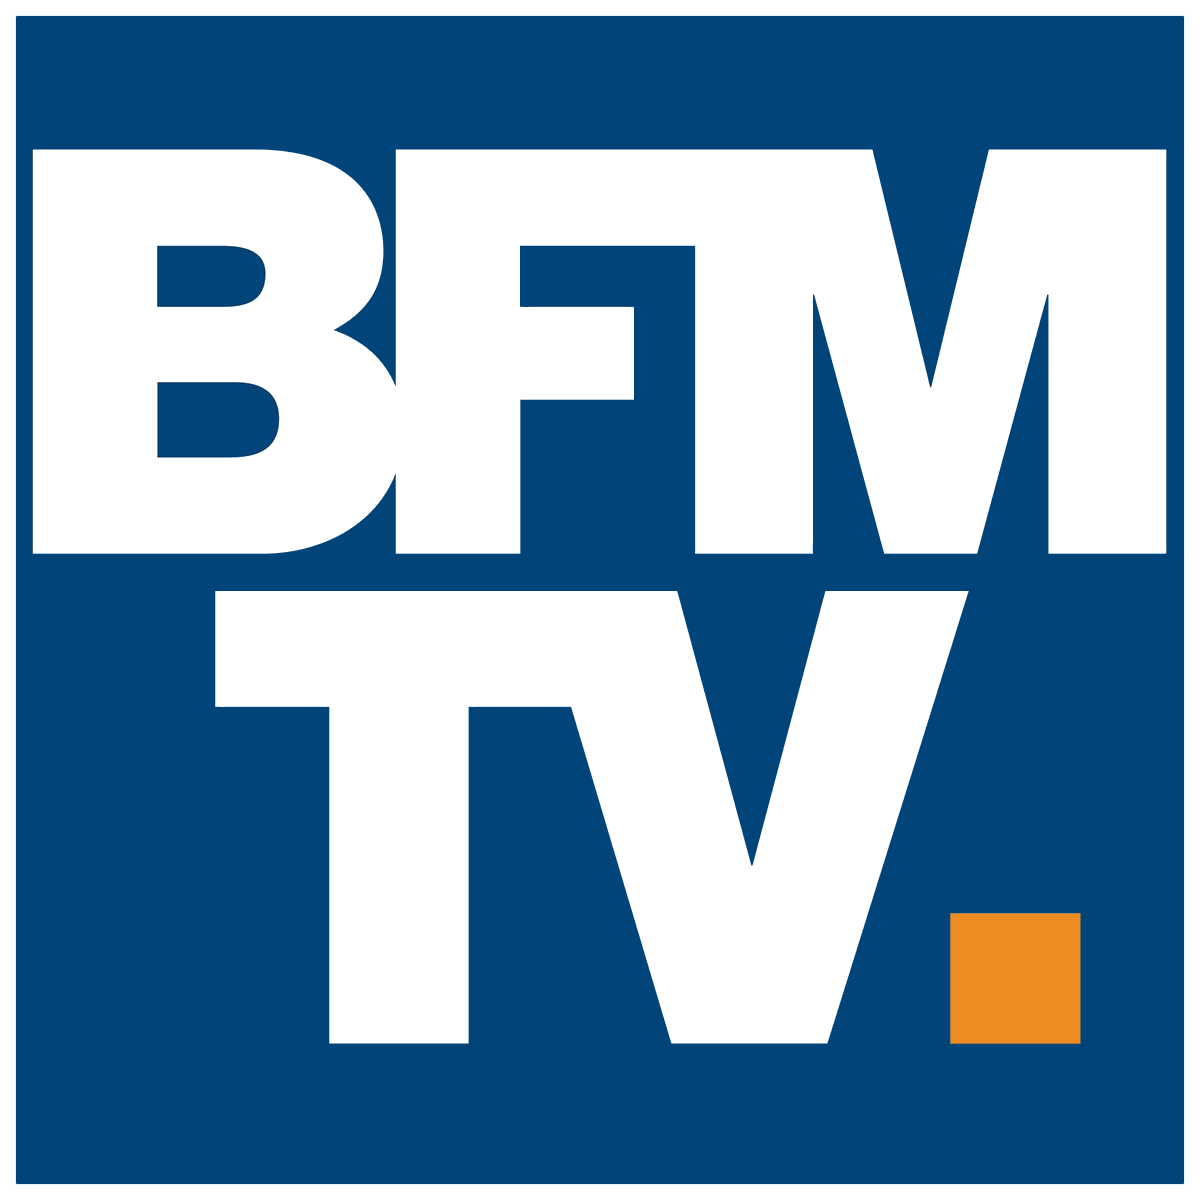 Télephone information entreprise  BFM TV